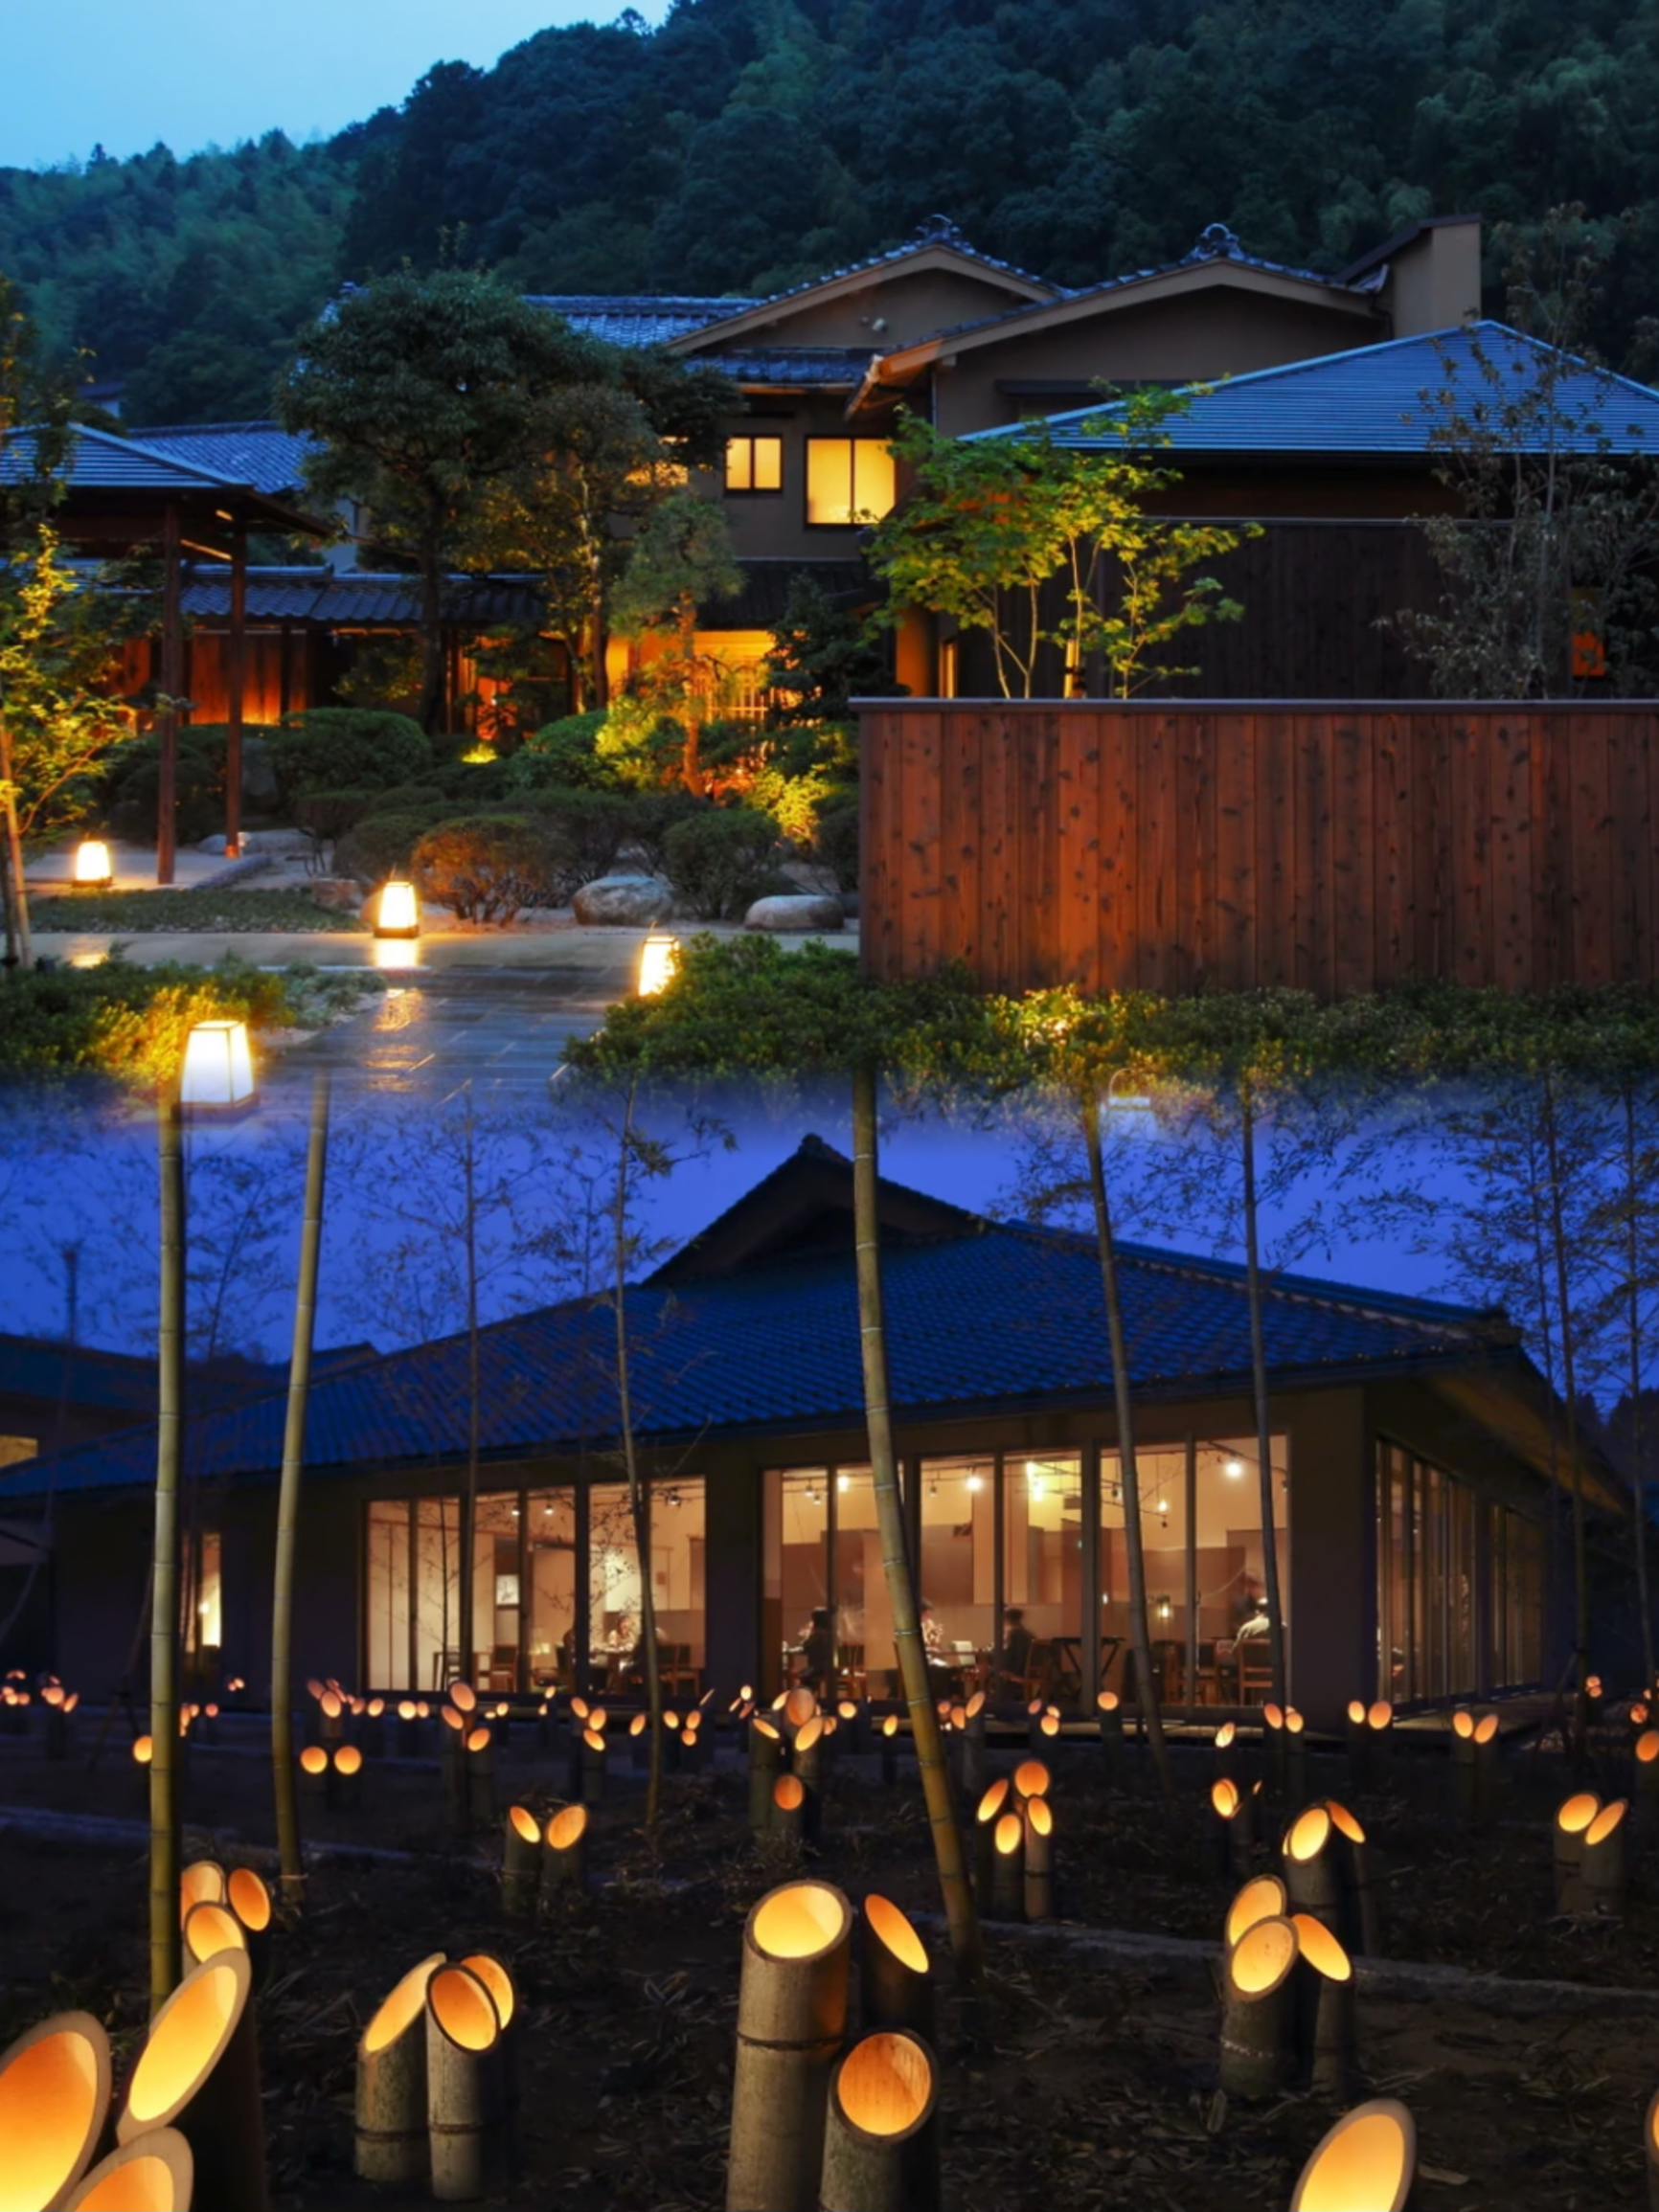 到了日本体验历史最悠久的温泉——玉造温泉